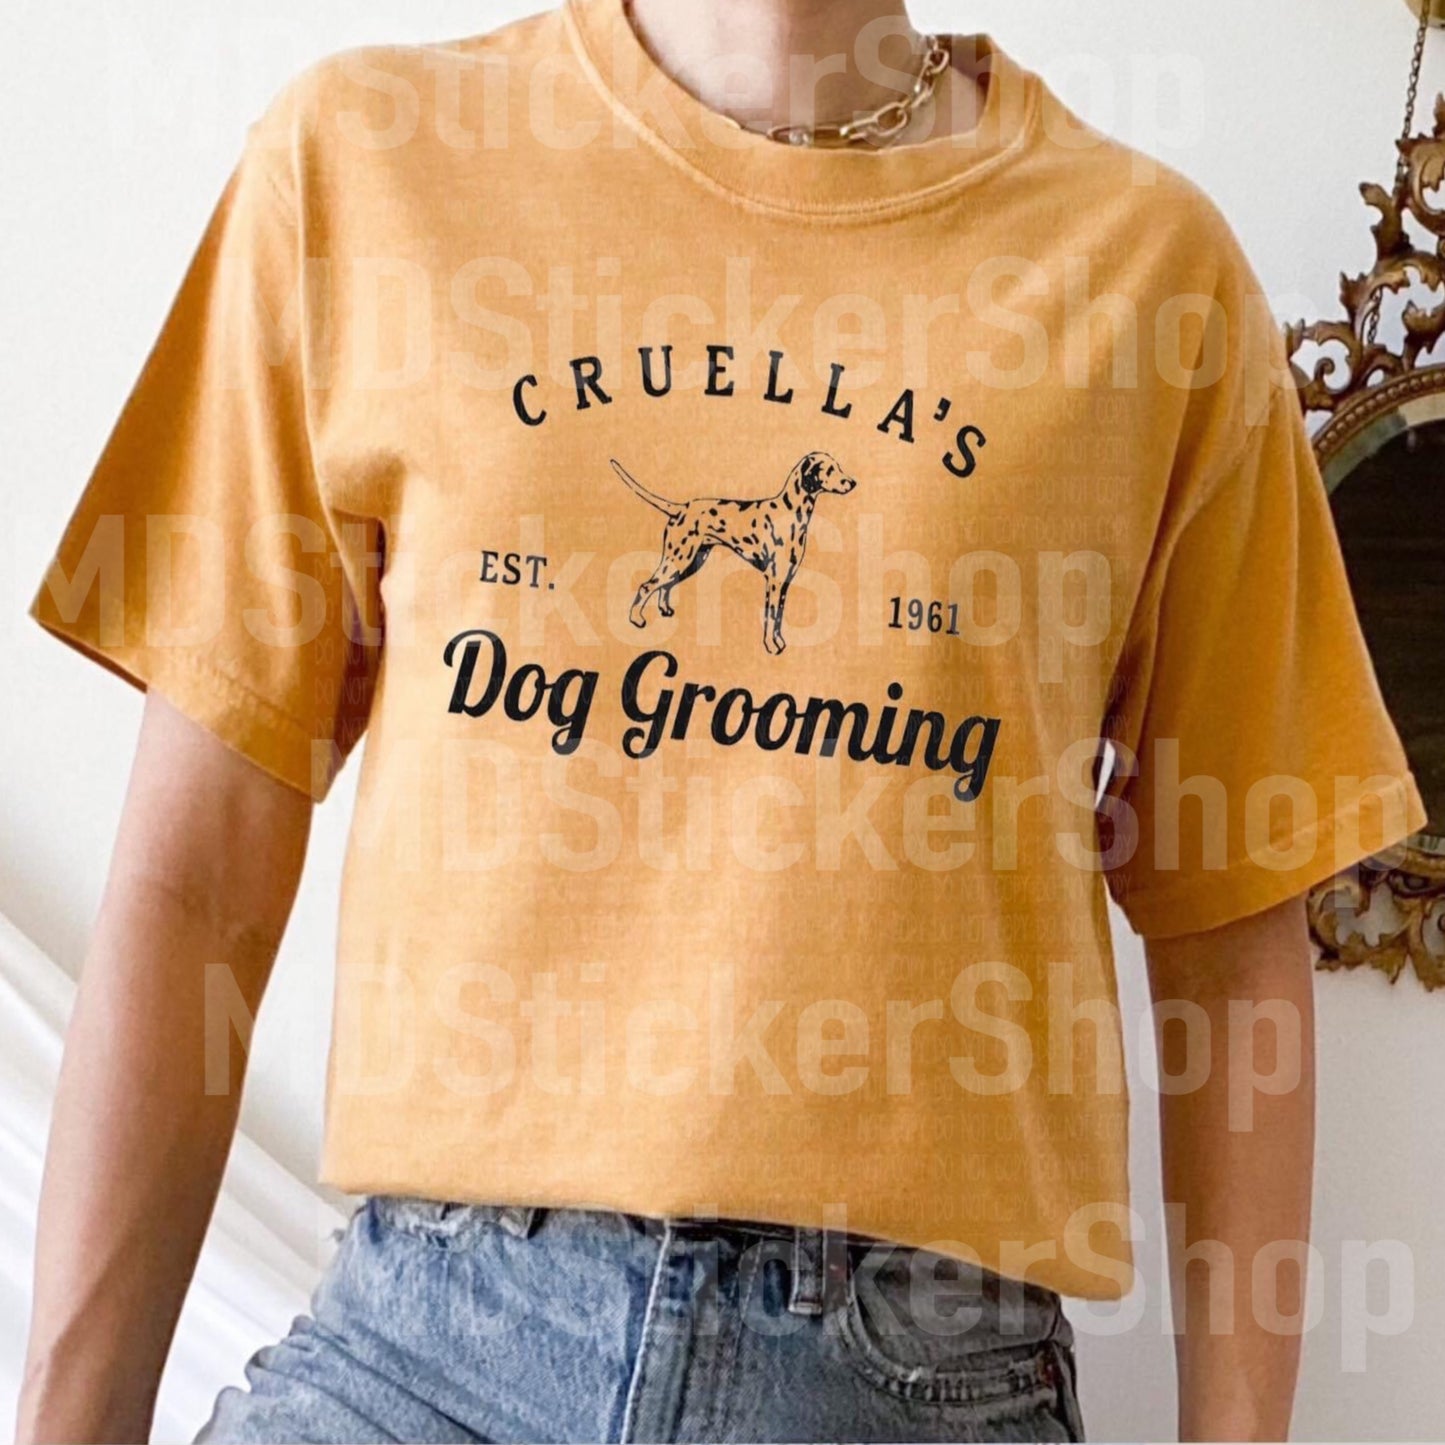 Cruella’s Dog Grooming Tee